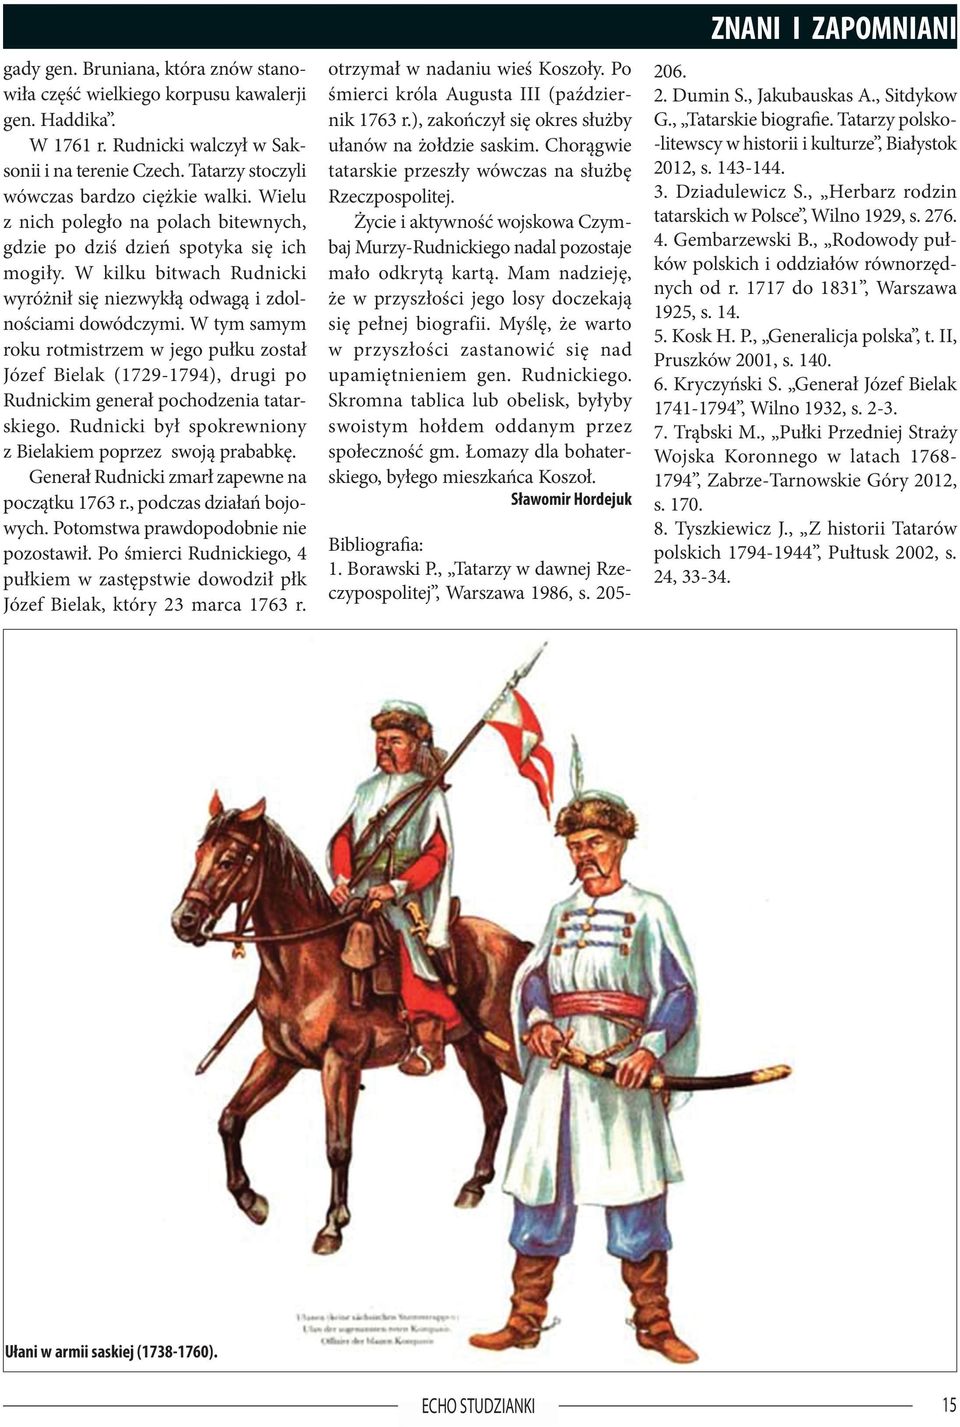 W tym samym roku rotmistrzem w jego pułku został Józef Bielak (1729-1794), drugi po Rudnickim generał pochodzenia tatarskiego. Rudnicki był spokrewniony z Bielakiem poprzez swoją prababkę.